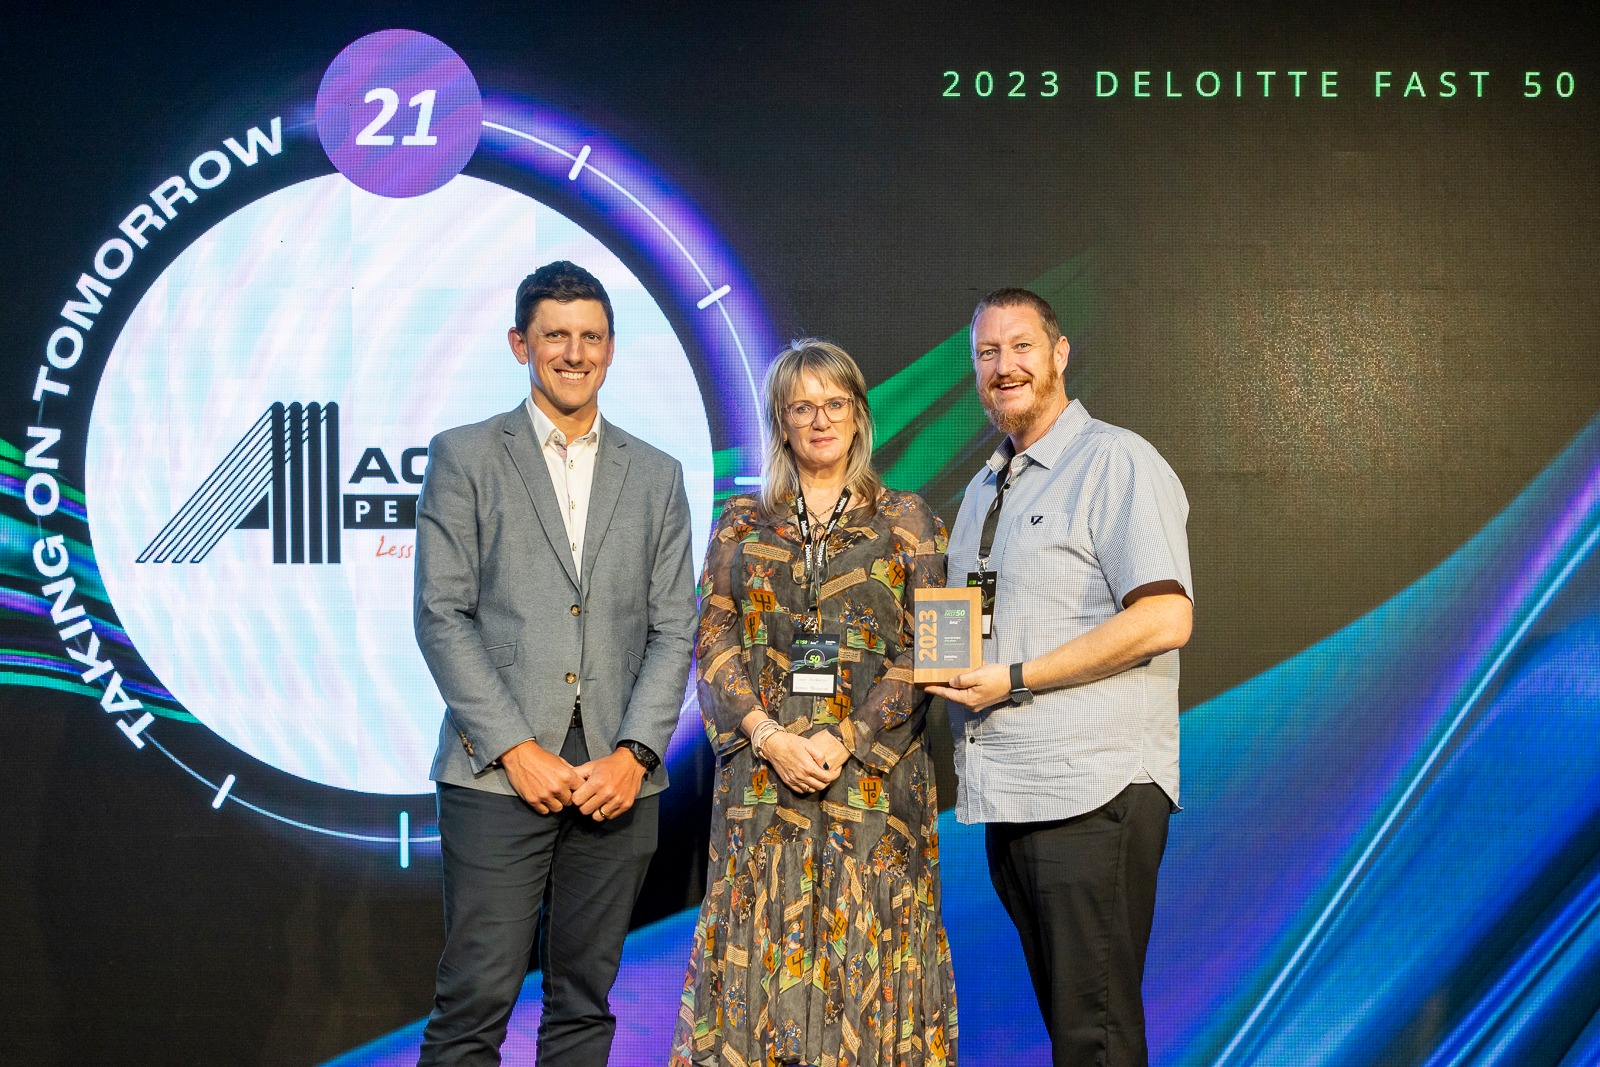 Deloitte Awards 2023 official photo